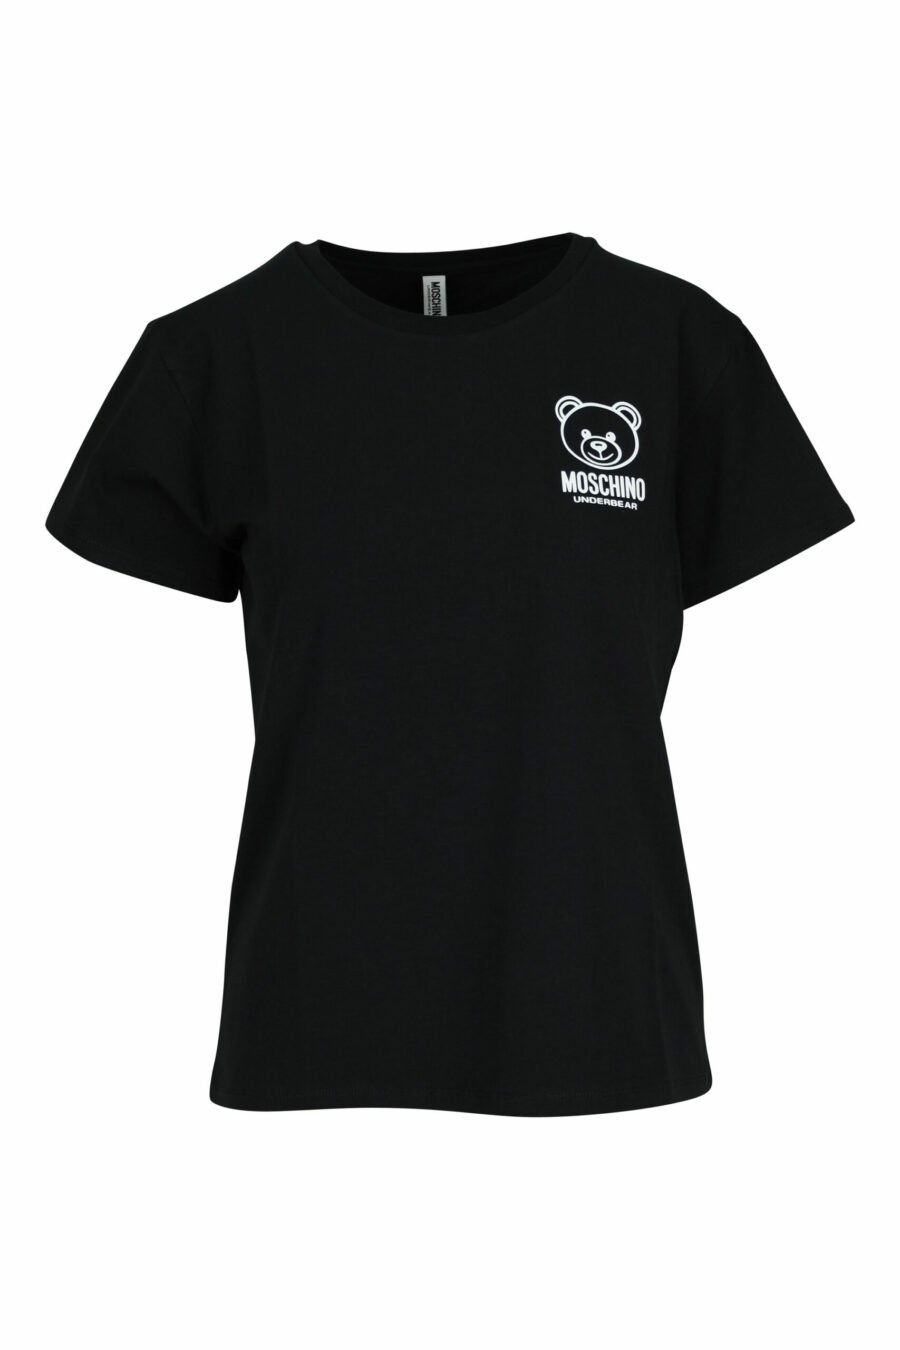 Schwarzes T-Shirt mit weißem Bären-Minilogo - 667113355306 skaliert